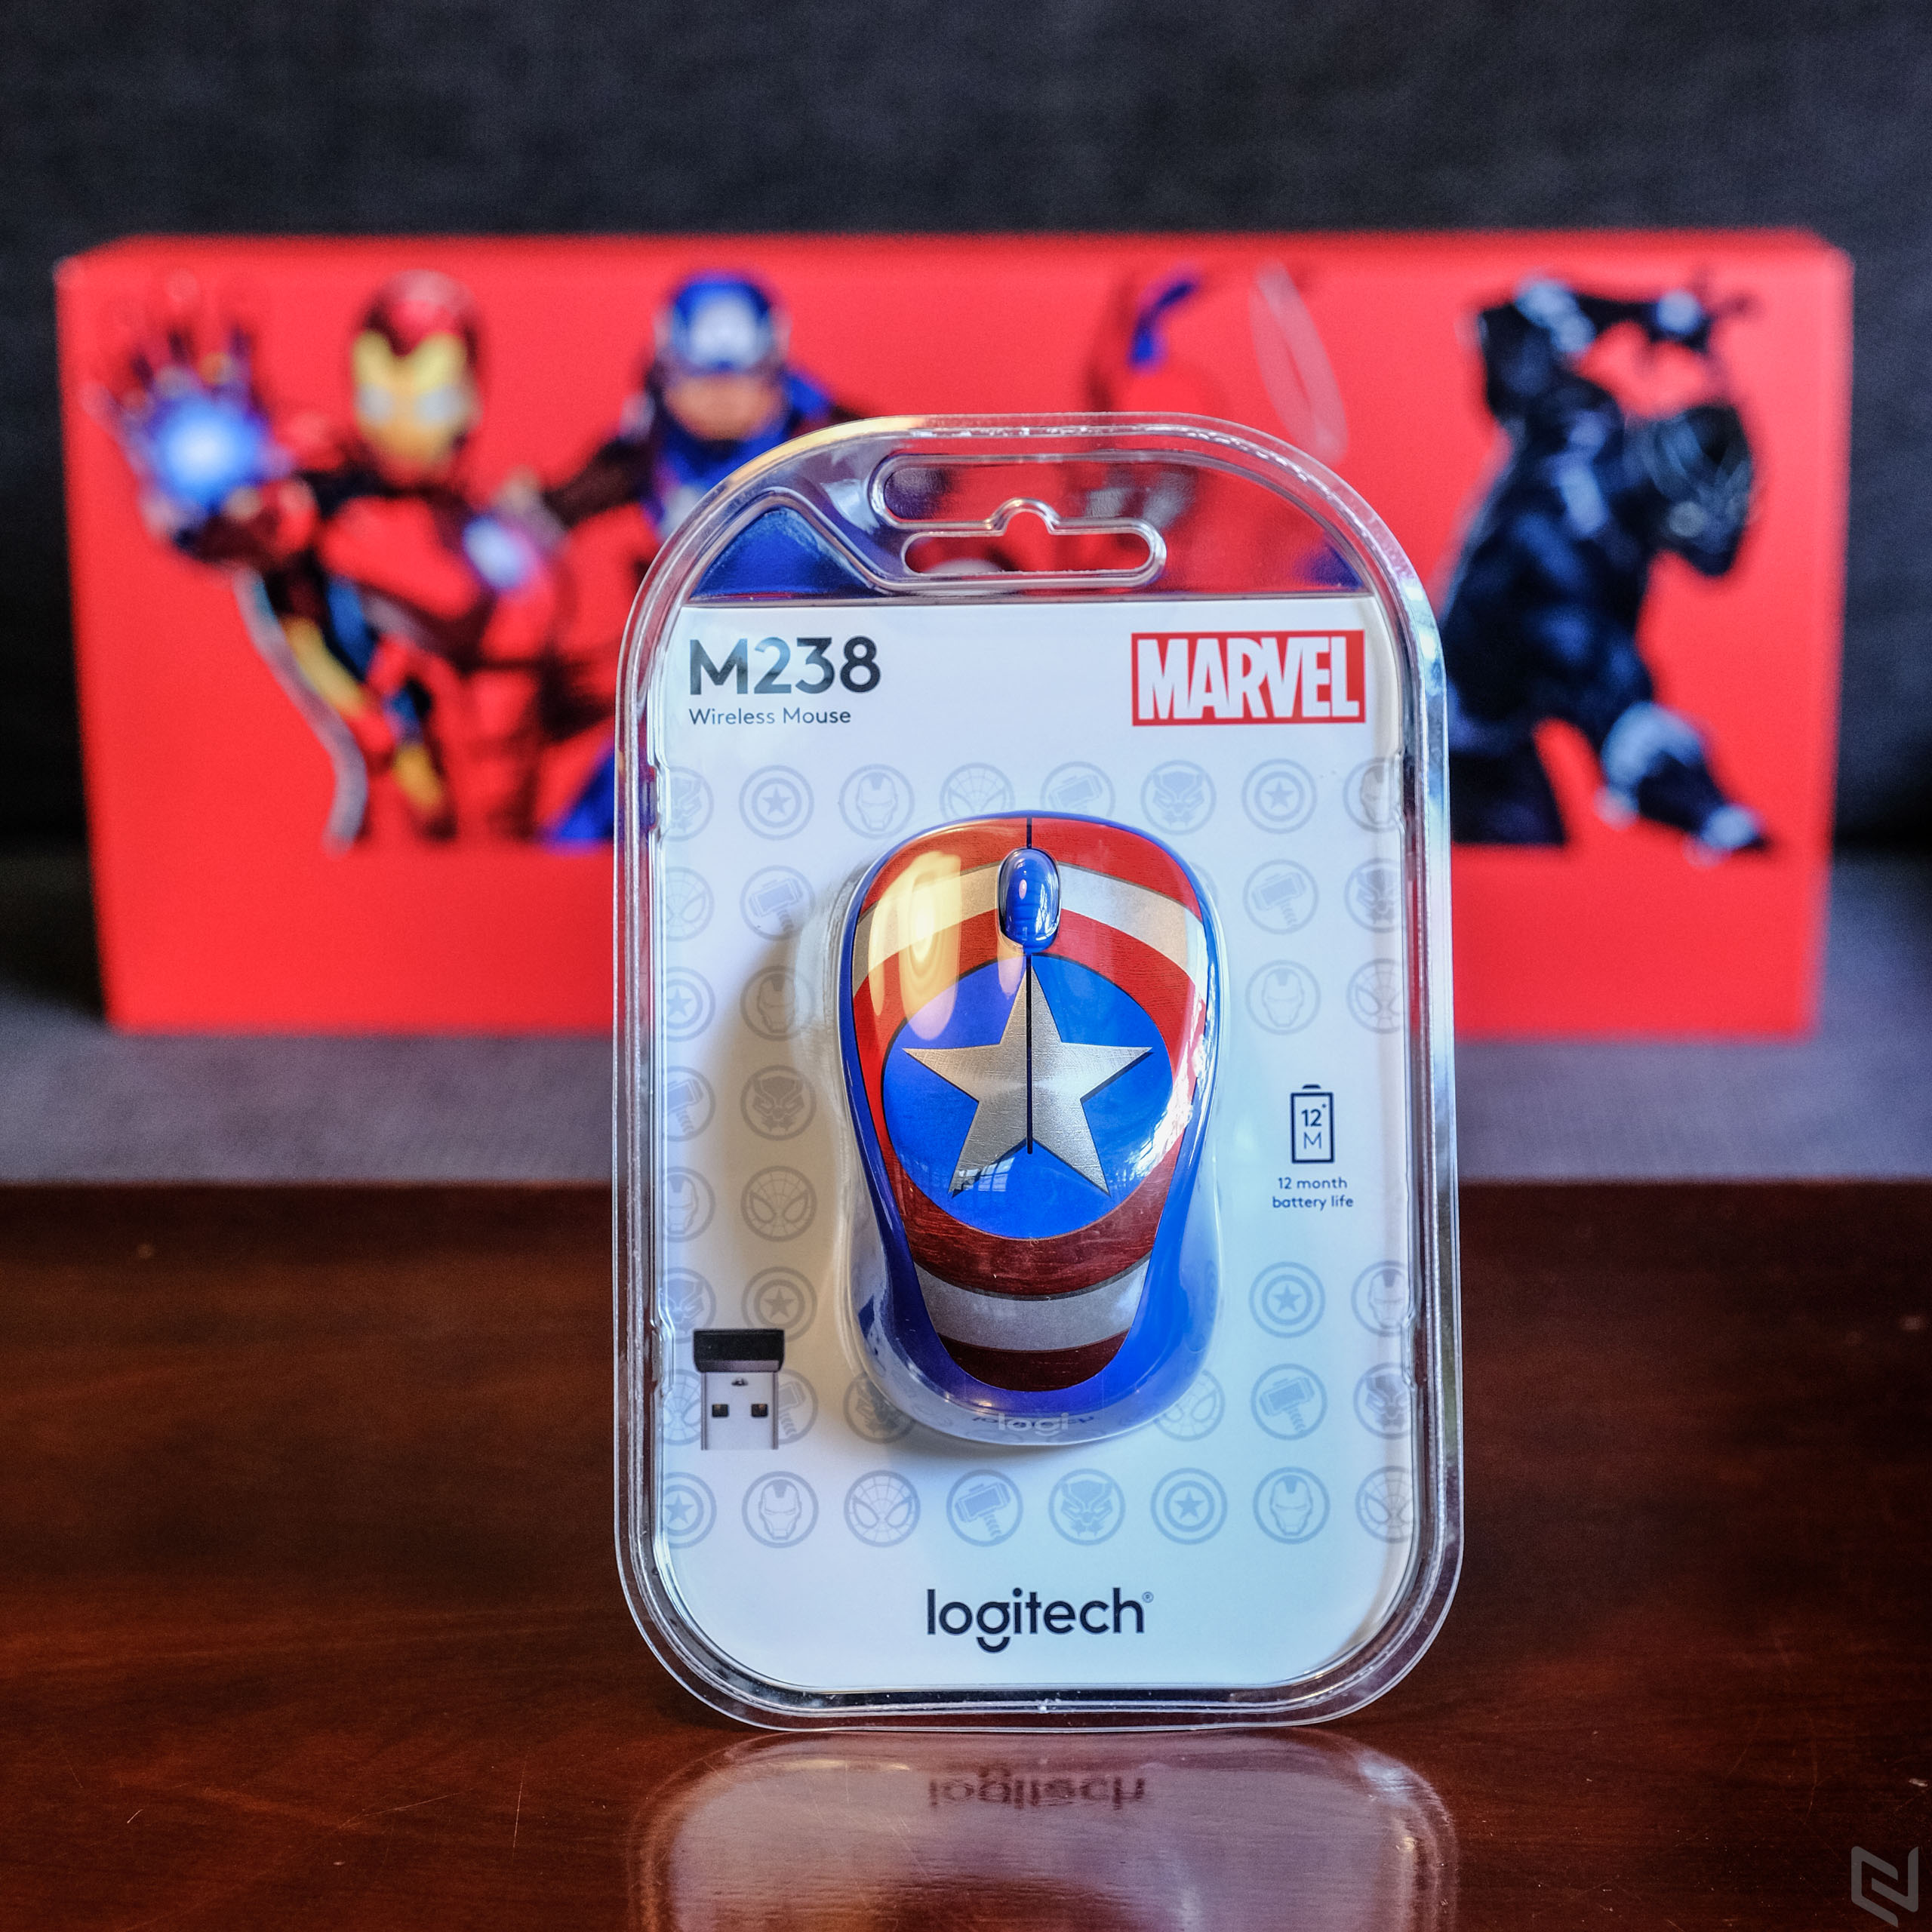 Trên tay bộ chuột siêu anh hùng MARVEL - Logitech M238 nhân dịp Captain Marvel công chiếu